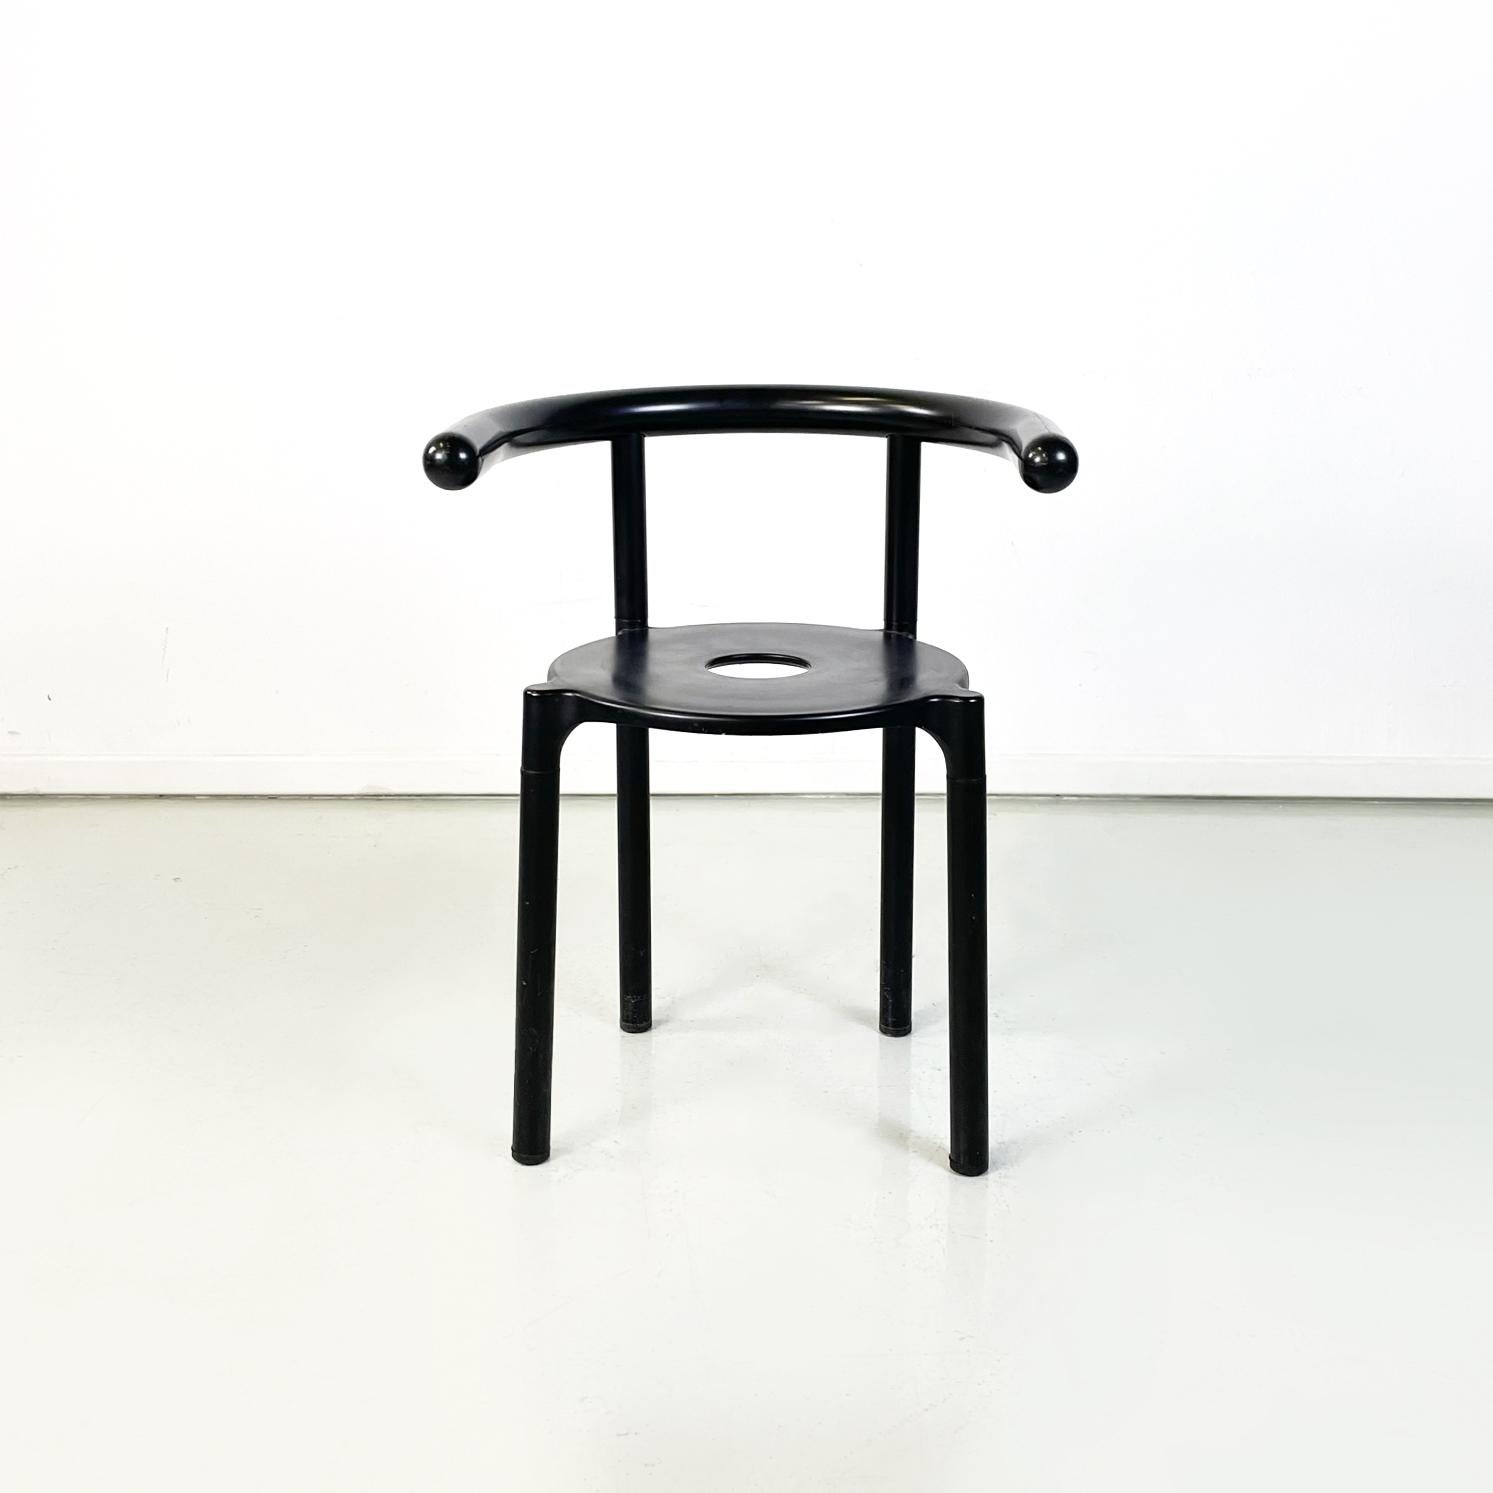 Italienische moderne Stühle aus schwarzem Metall und Kunststoff 4855 von Anna Castelli Kartell, 1990er Jahre
Satz von 12 Esszimmerstühlen mod. 4855 mit rundem Sitz mit Loch in der Mitte, aus Kunststoff und schwarzem Metall. Die Struktur in Form